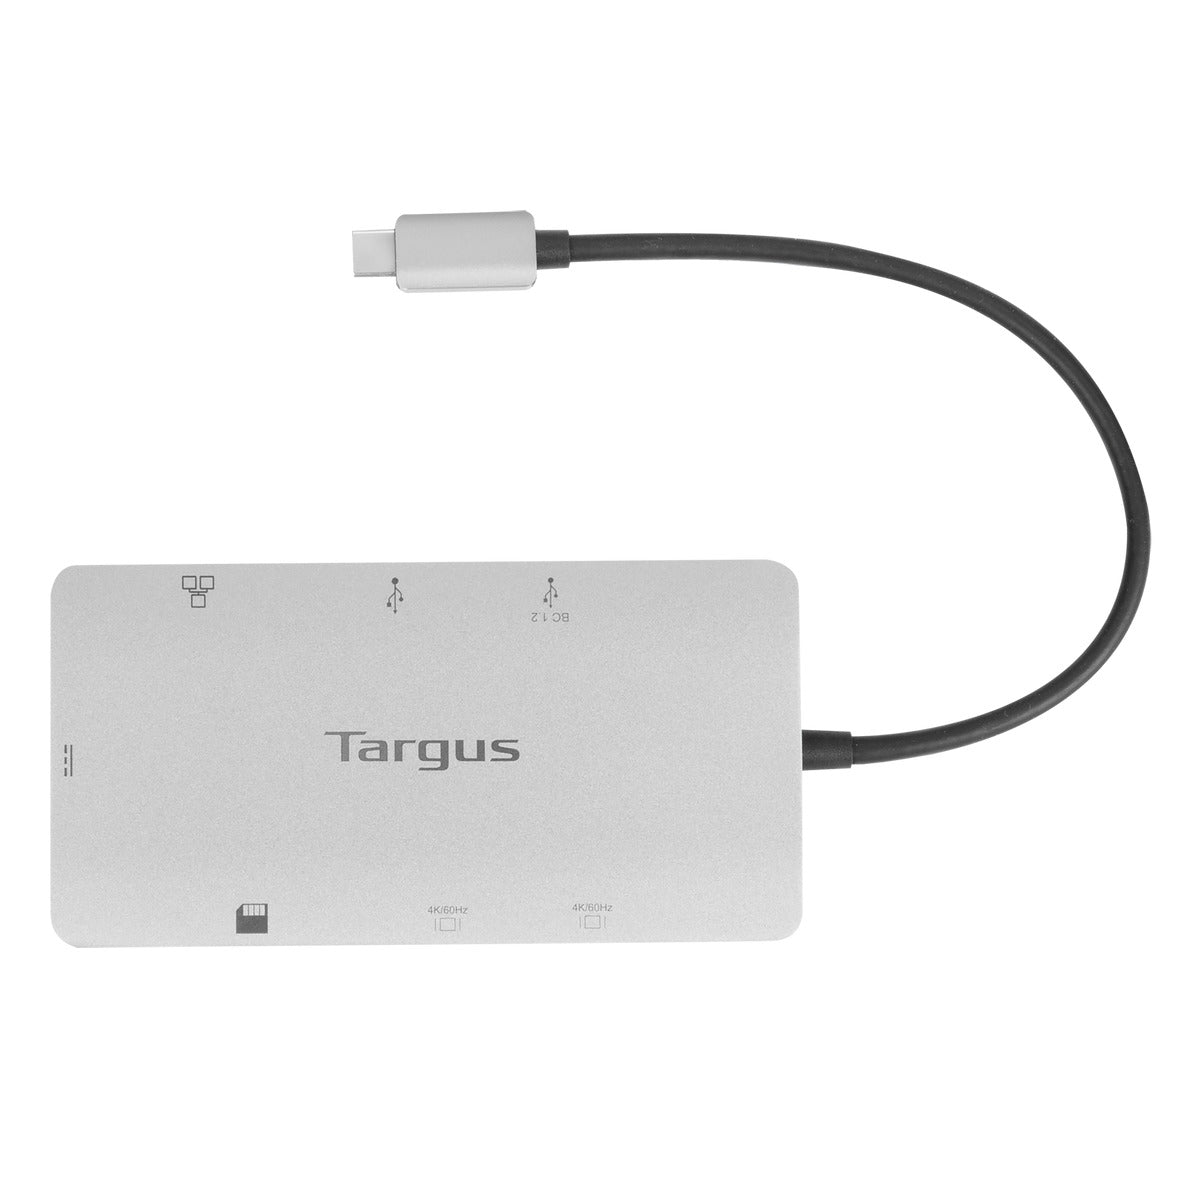 Targus DOCK423 USB-C Docking Station 擴充基座